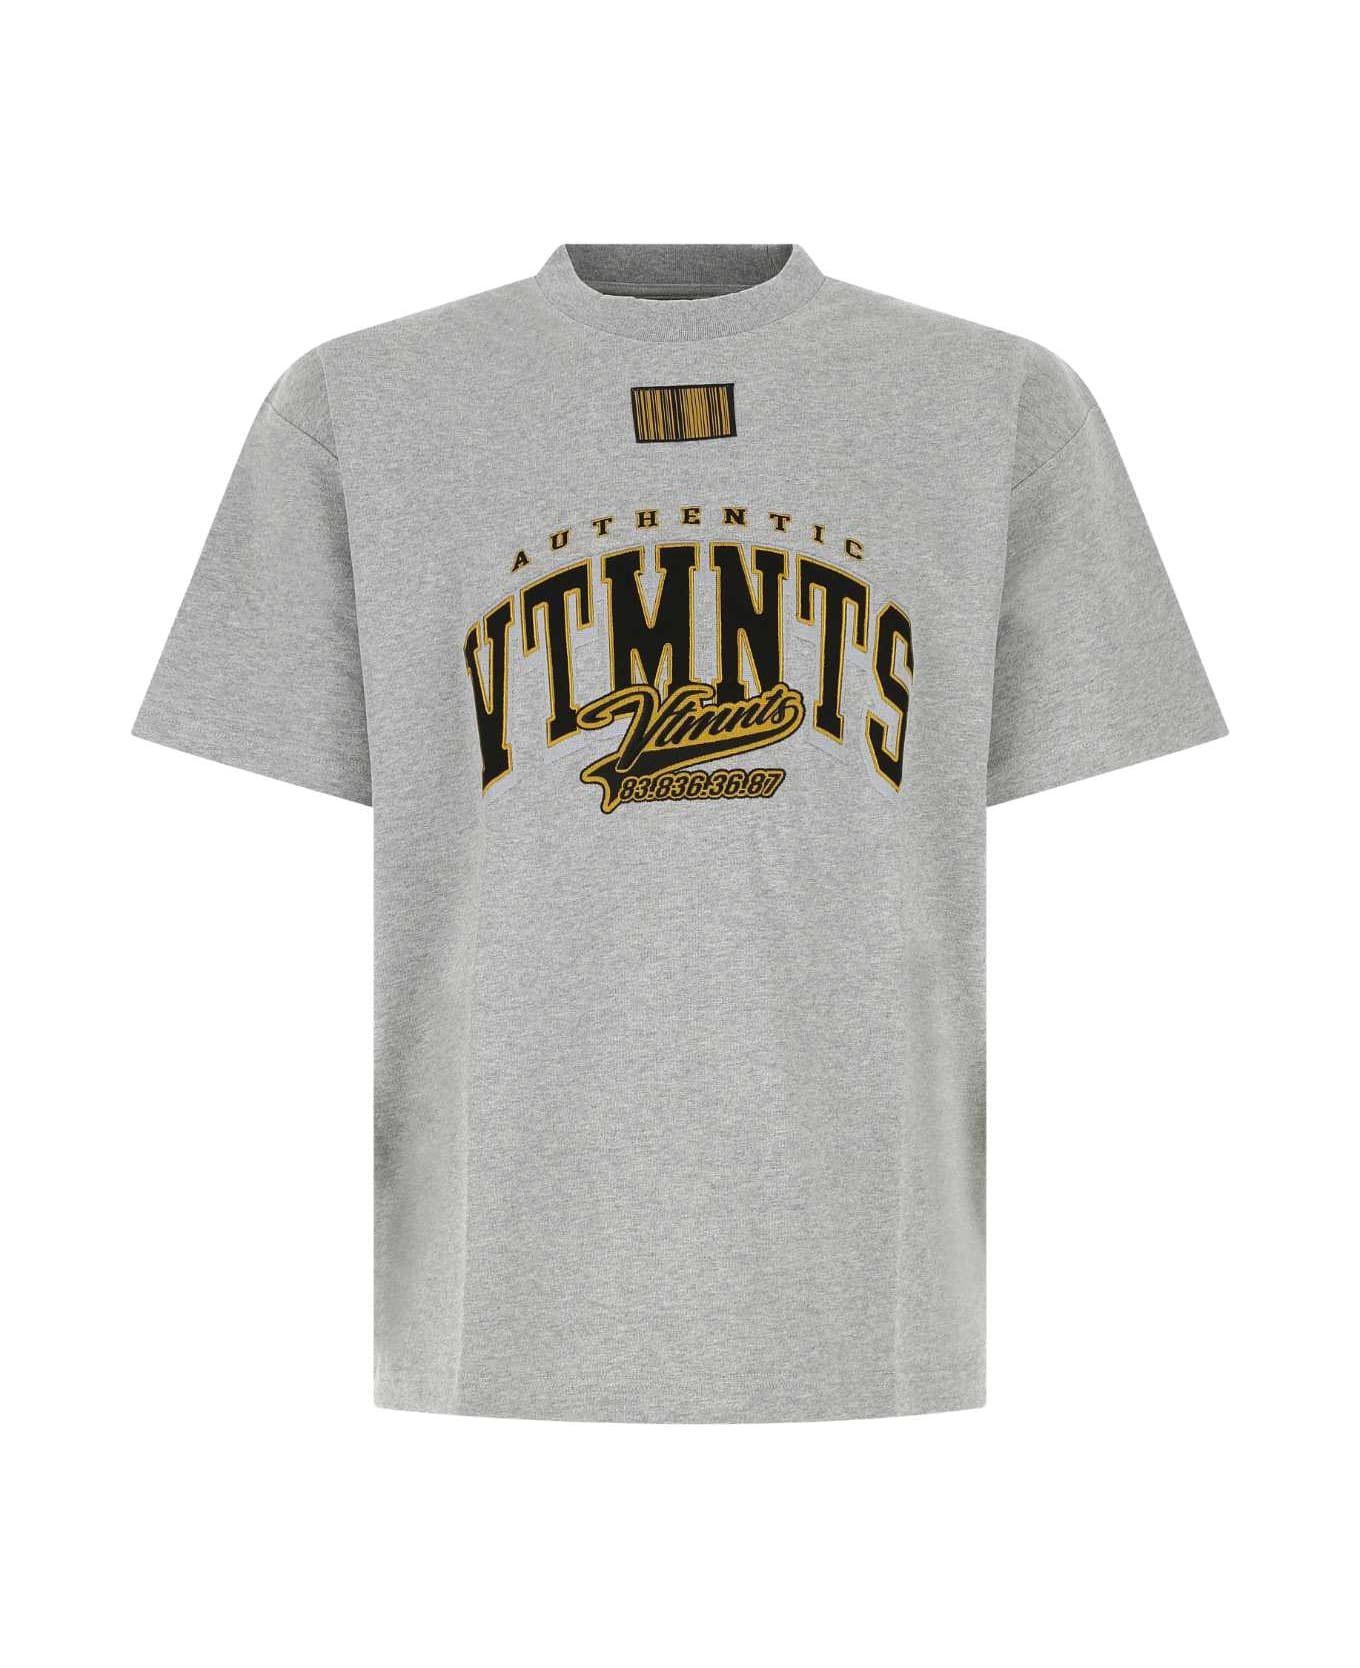 VTMNTS Melange Grey Cotton T-shirt - GREYMELANGE シャツ